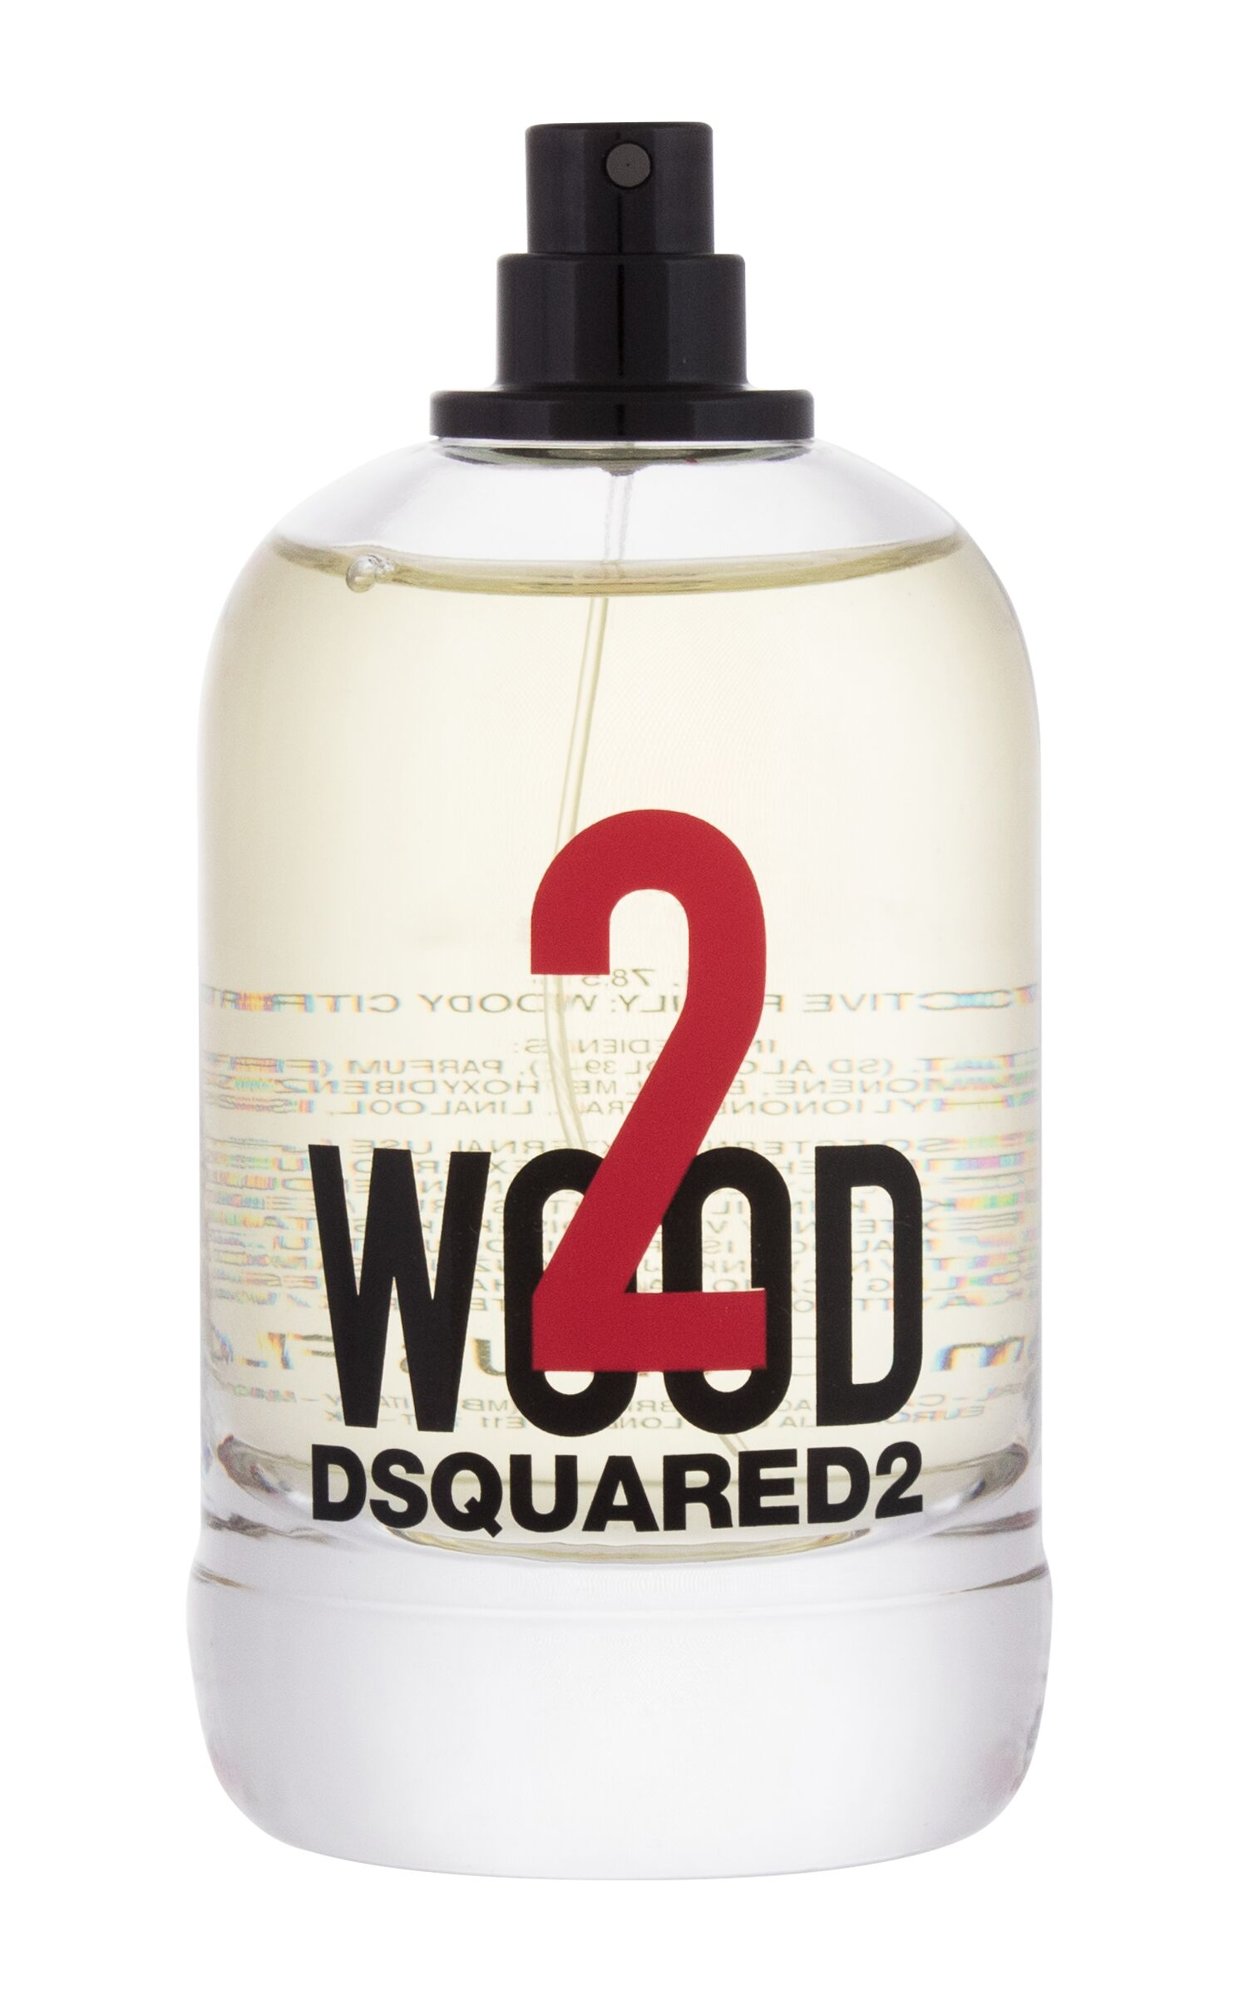 Dsquared2 2 Wood, Toaletní voda 100ml, Tester